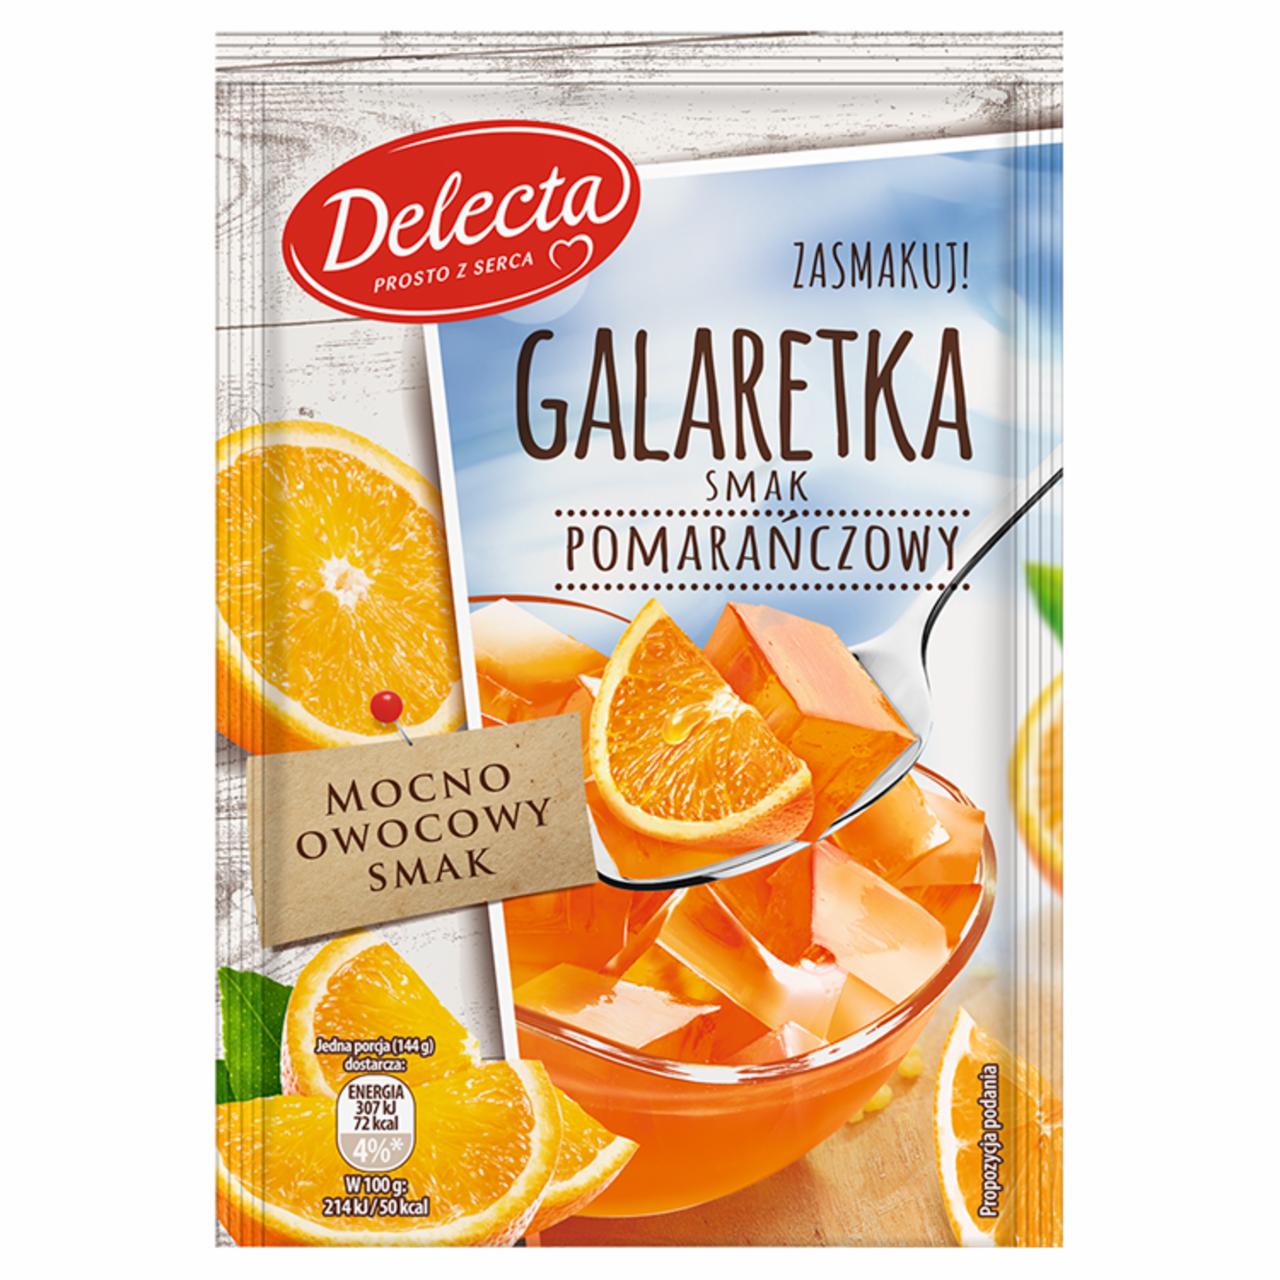 Zdjęcia - Delecta Galaretka smak pomarańczowy 75 g